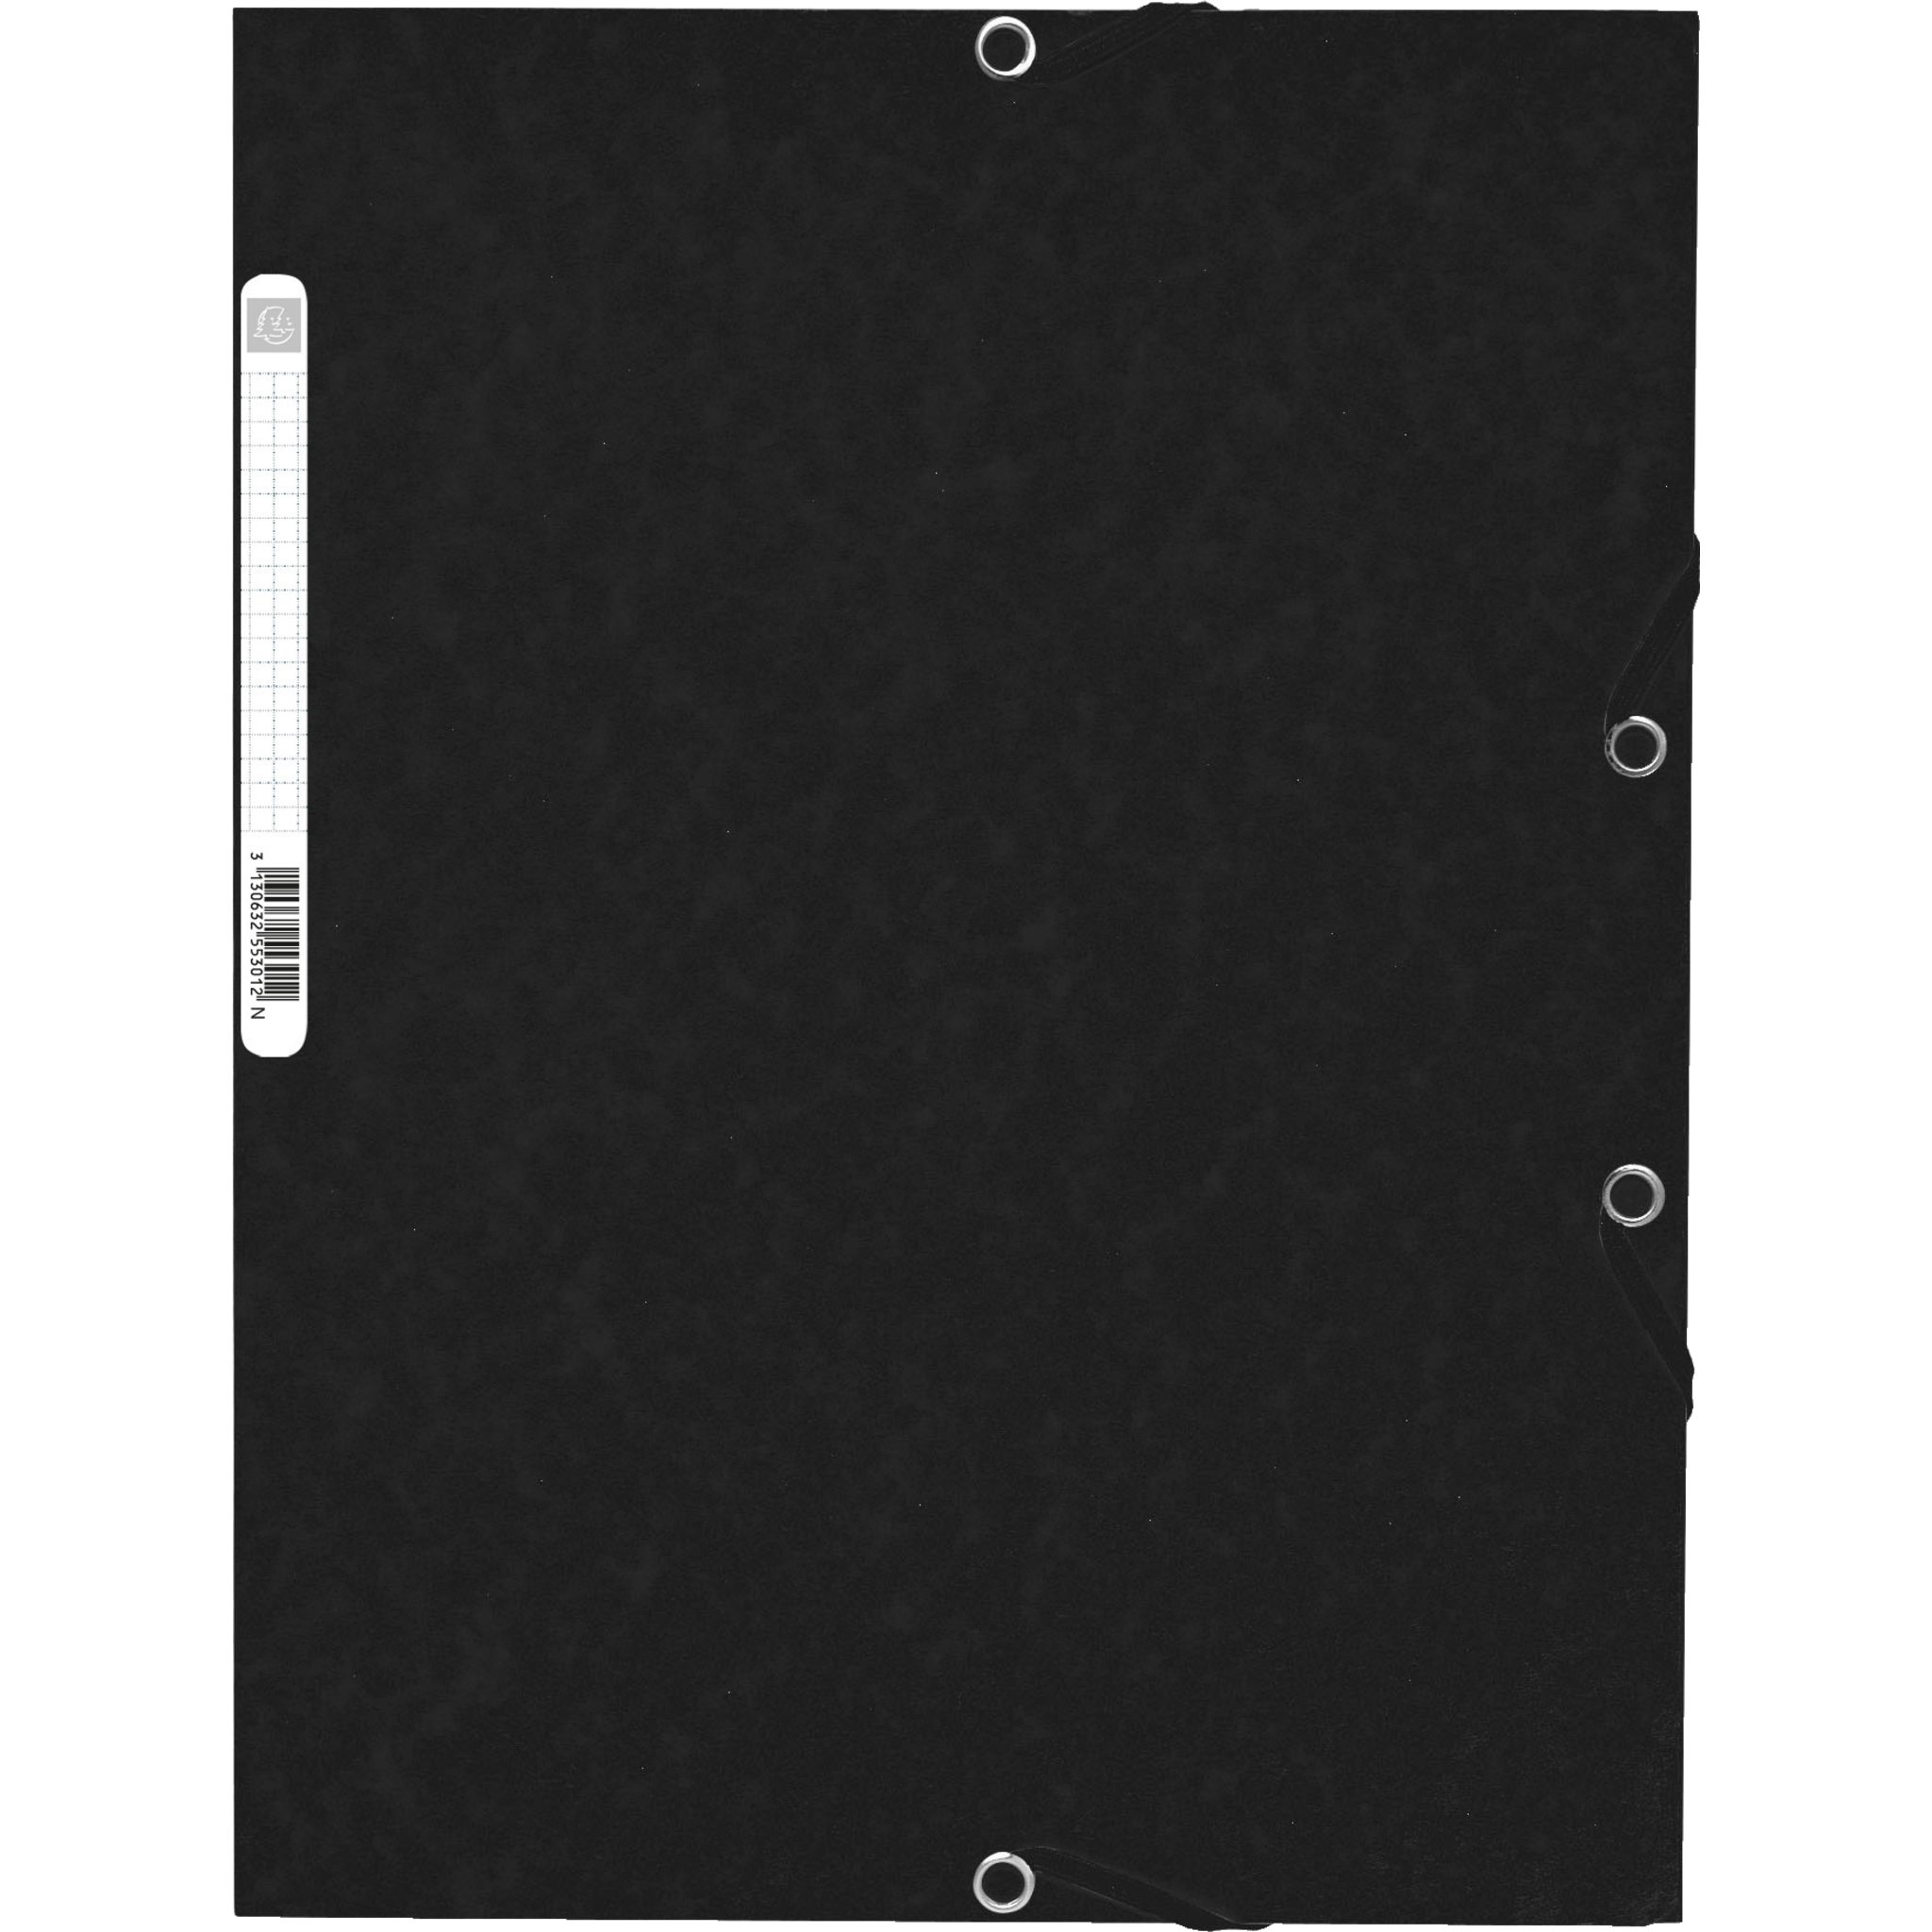 EXACOMPTA Sammelmappe mit Gummizug und 3 Klappen aus Colorspan-Karton 355g/qm, für Format DIN A4 - Schwarz